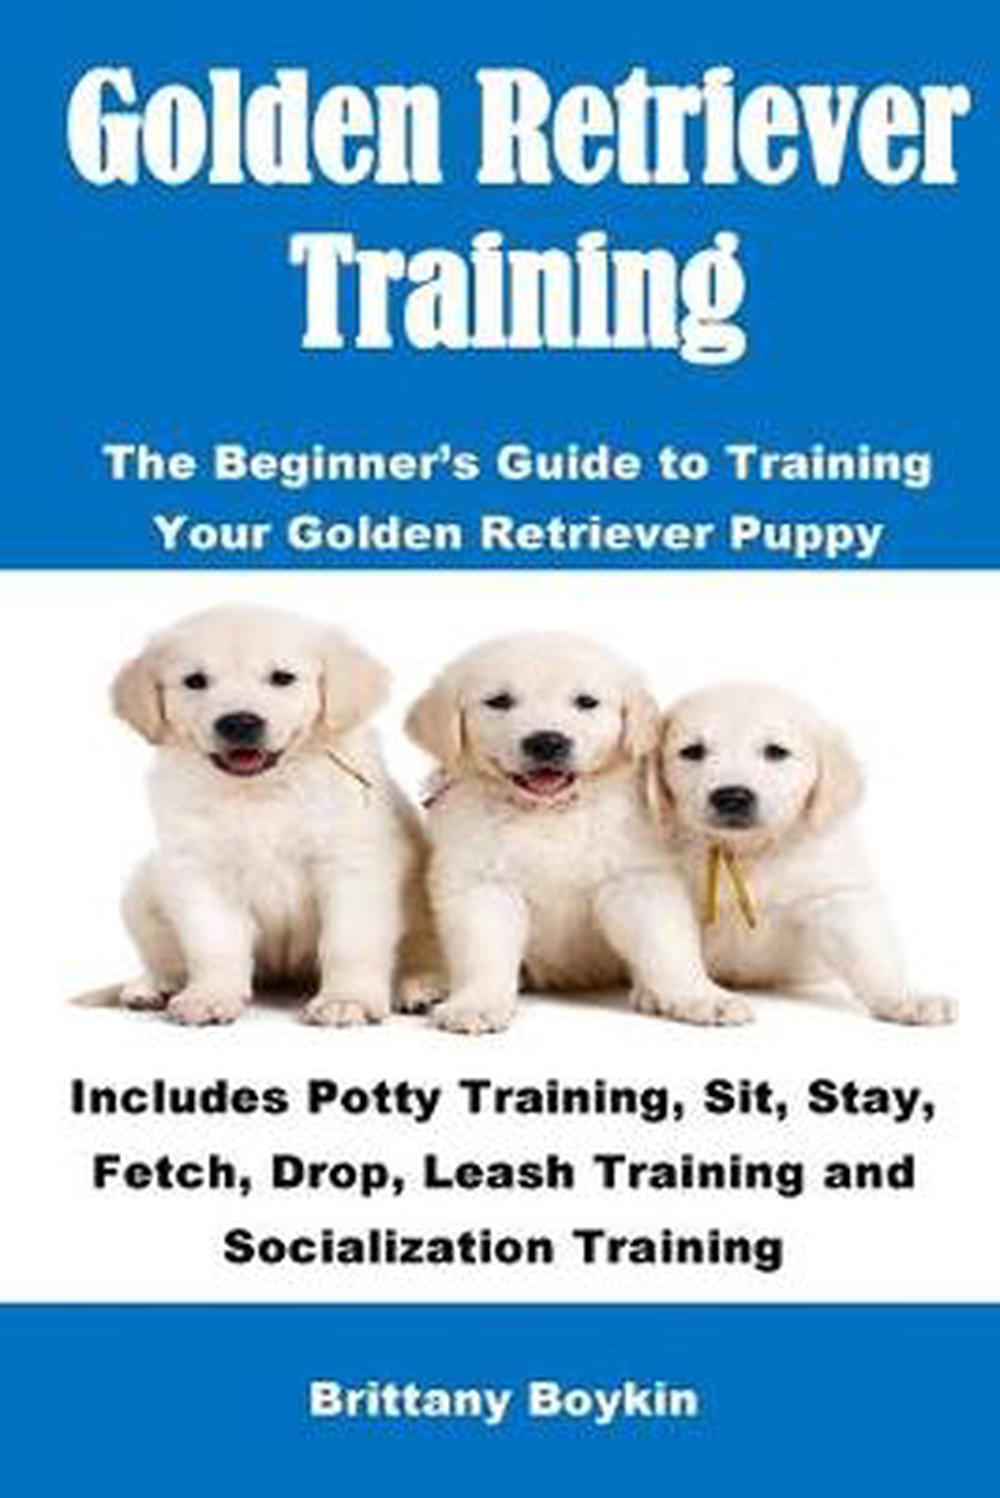 Golden Retriever Training: The Beginner